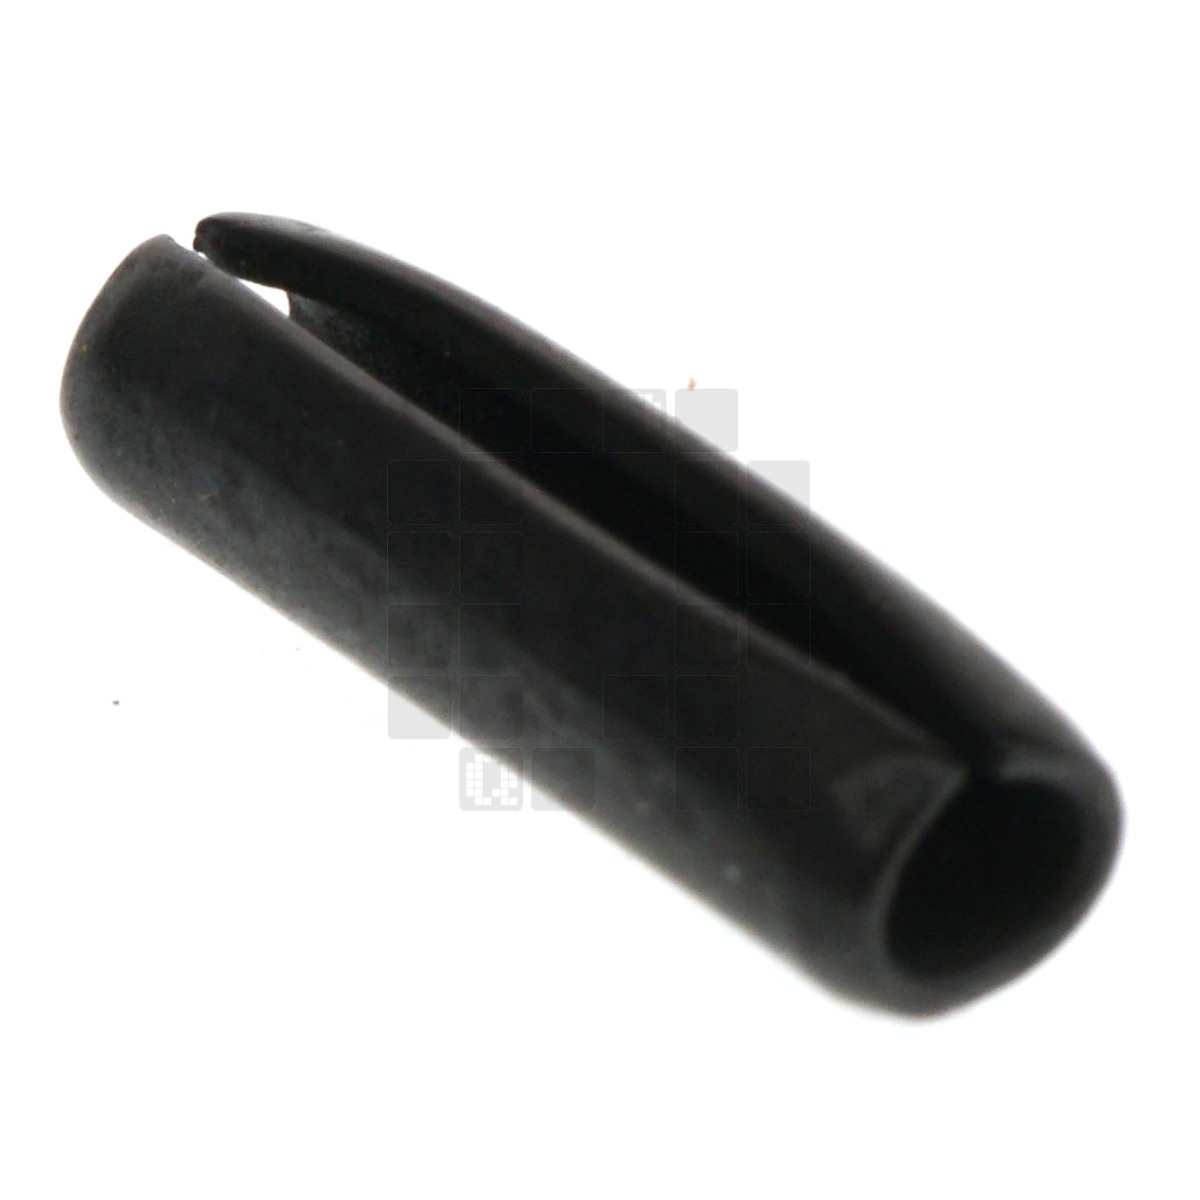 Makita 258018-7 Spring Pin, 2.5mm x 9mm